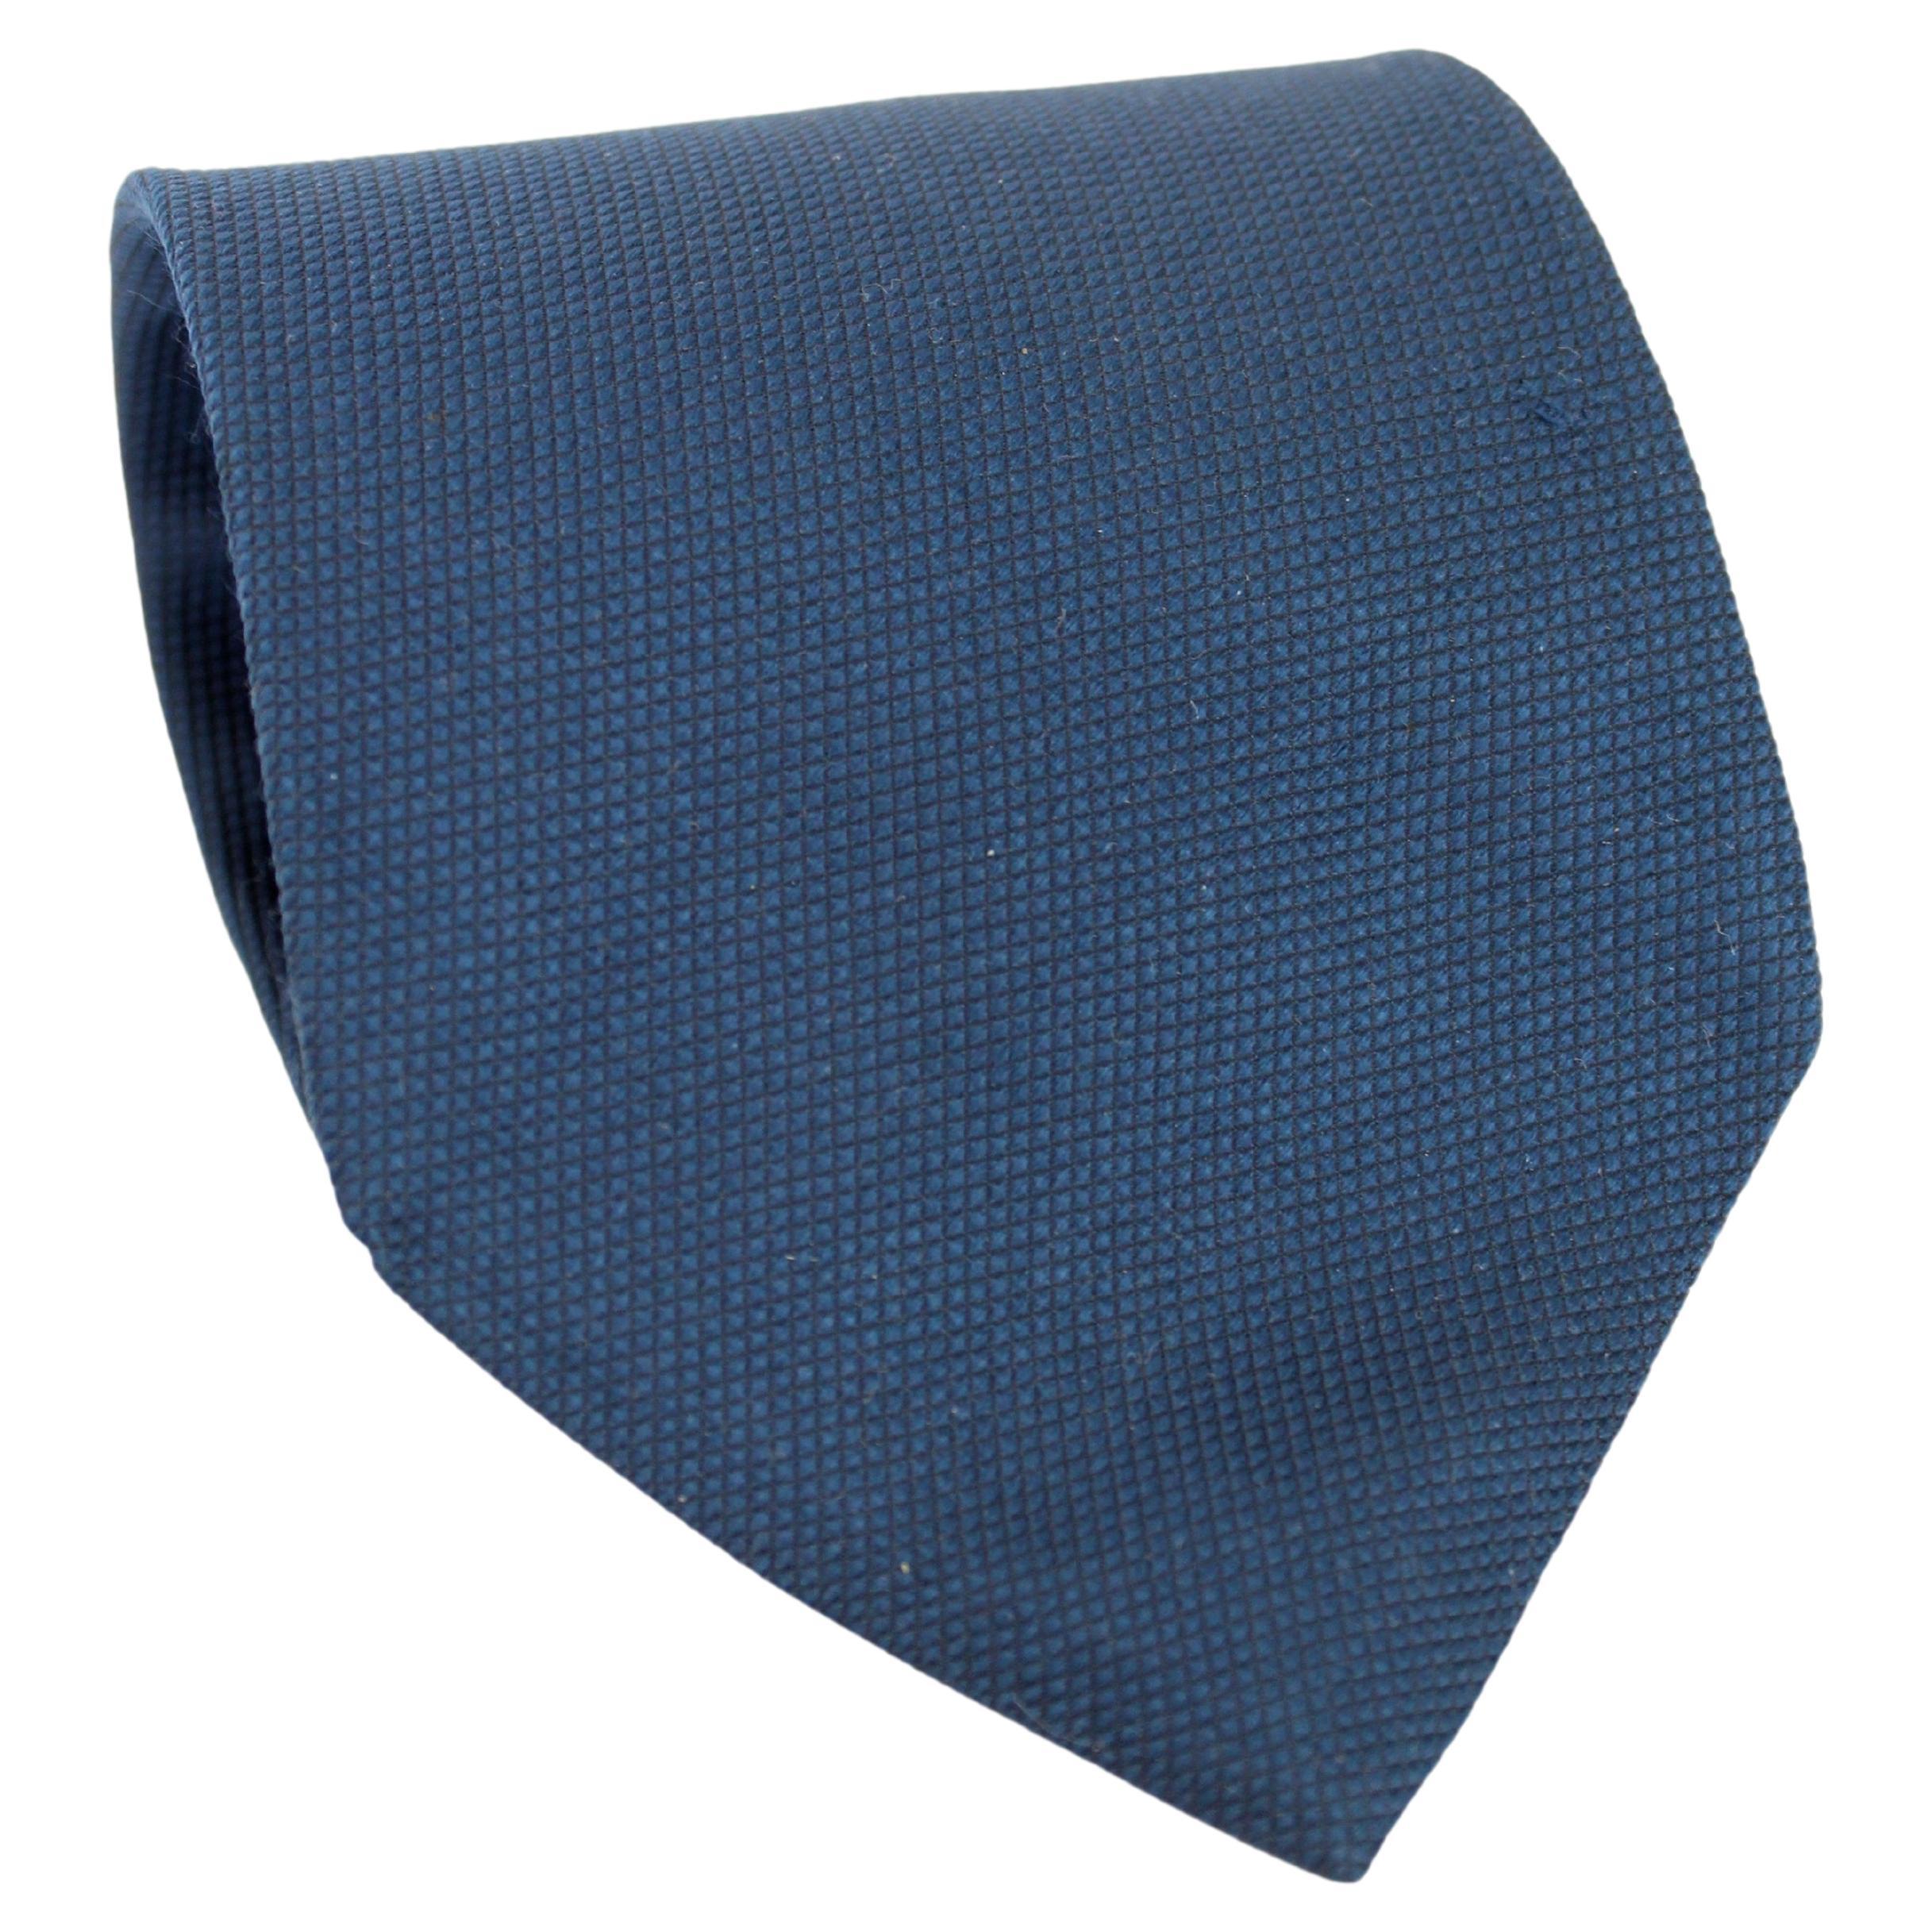 Cravate classique en soie bleue Giorgio Armani